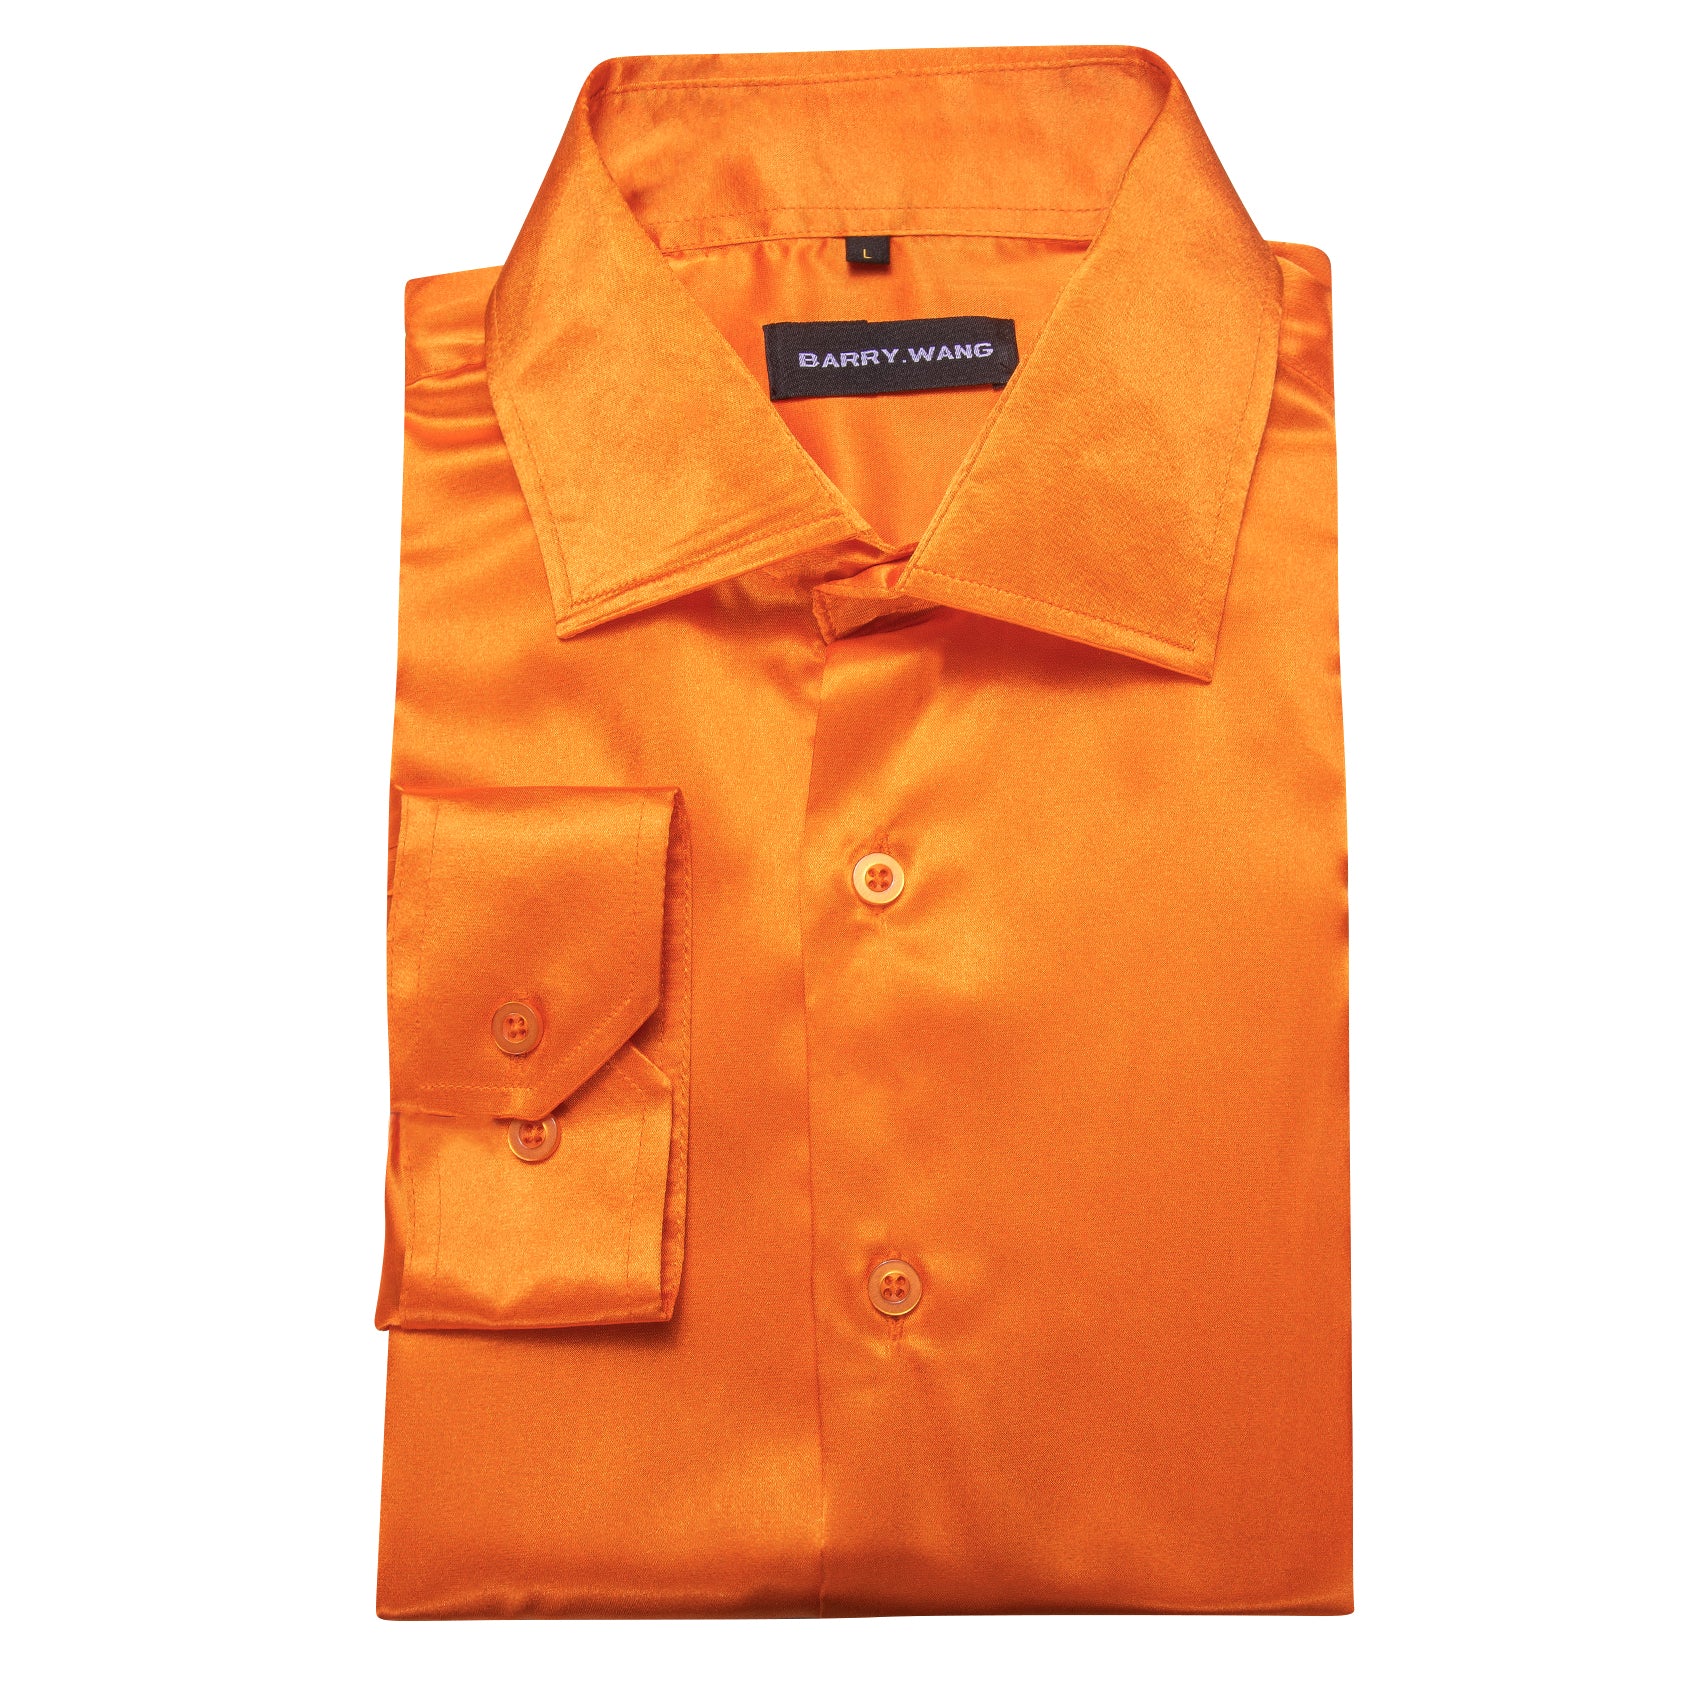 Barry.wang Button Down Shirt Men's Fashionable Orange Solid Silk Shirt